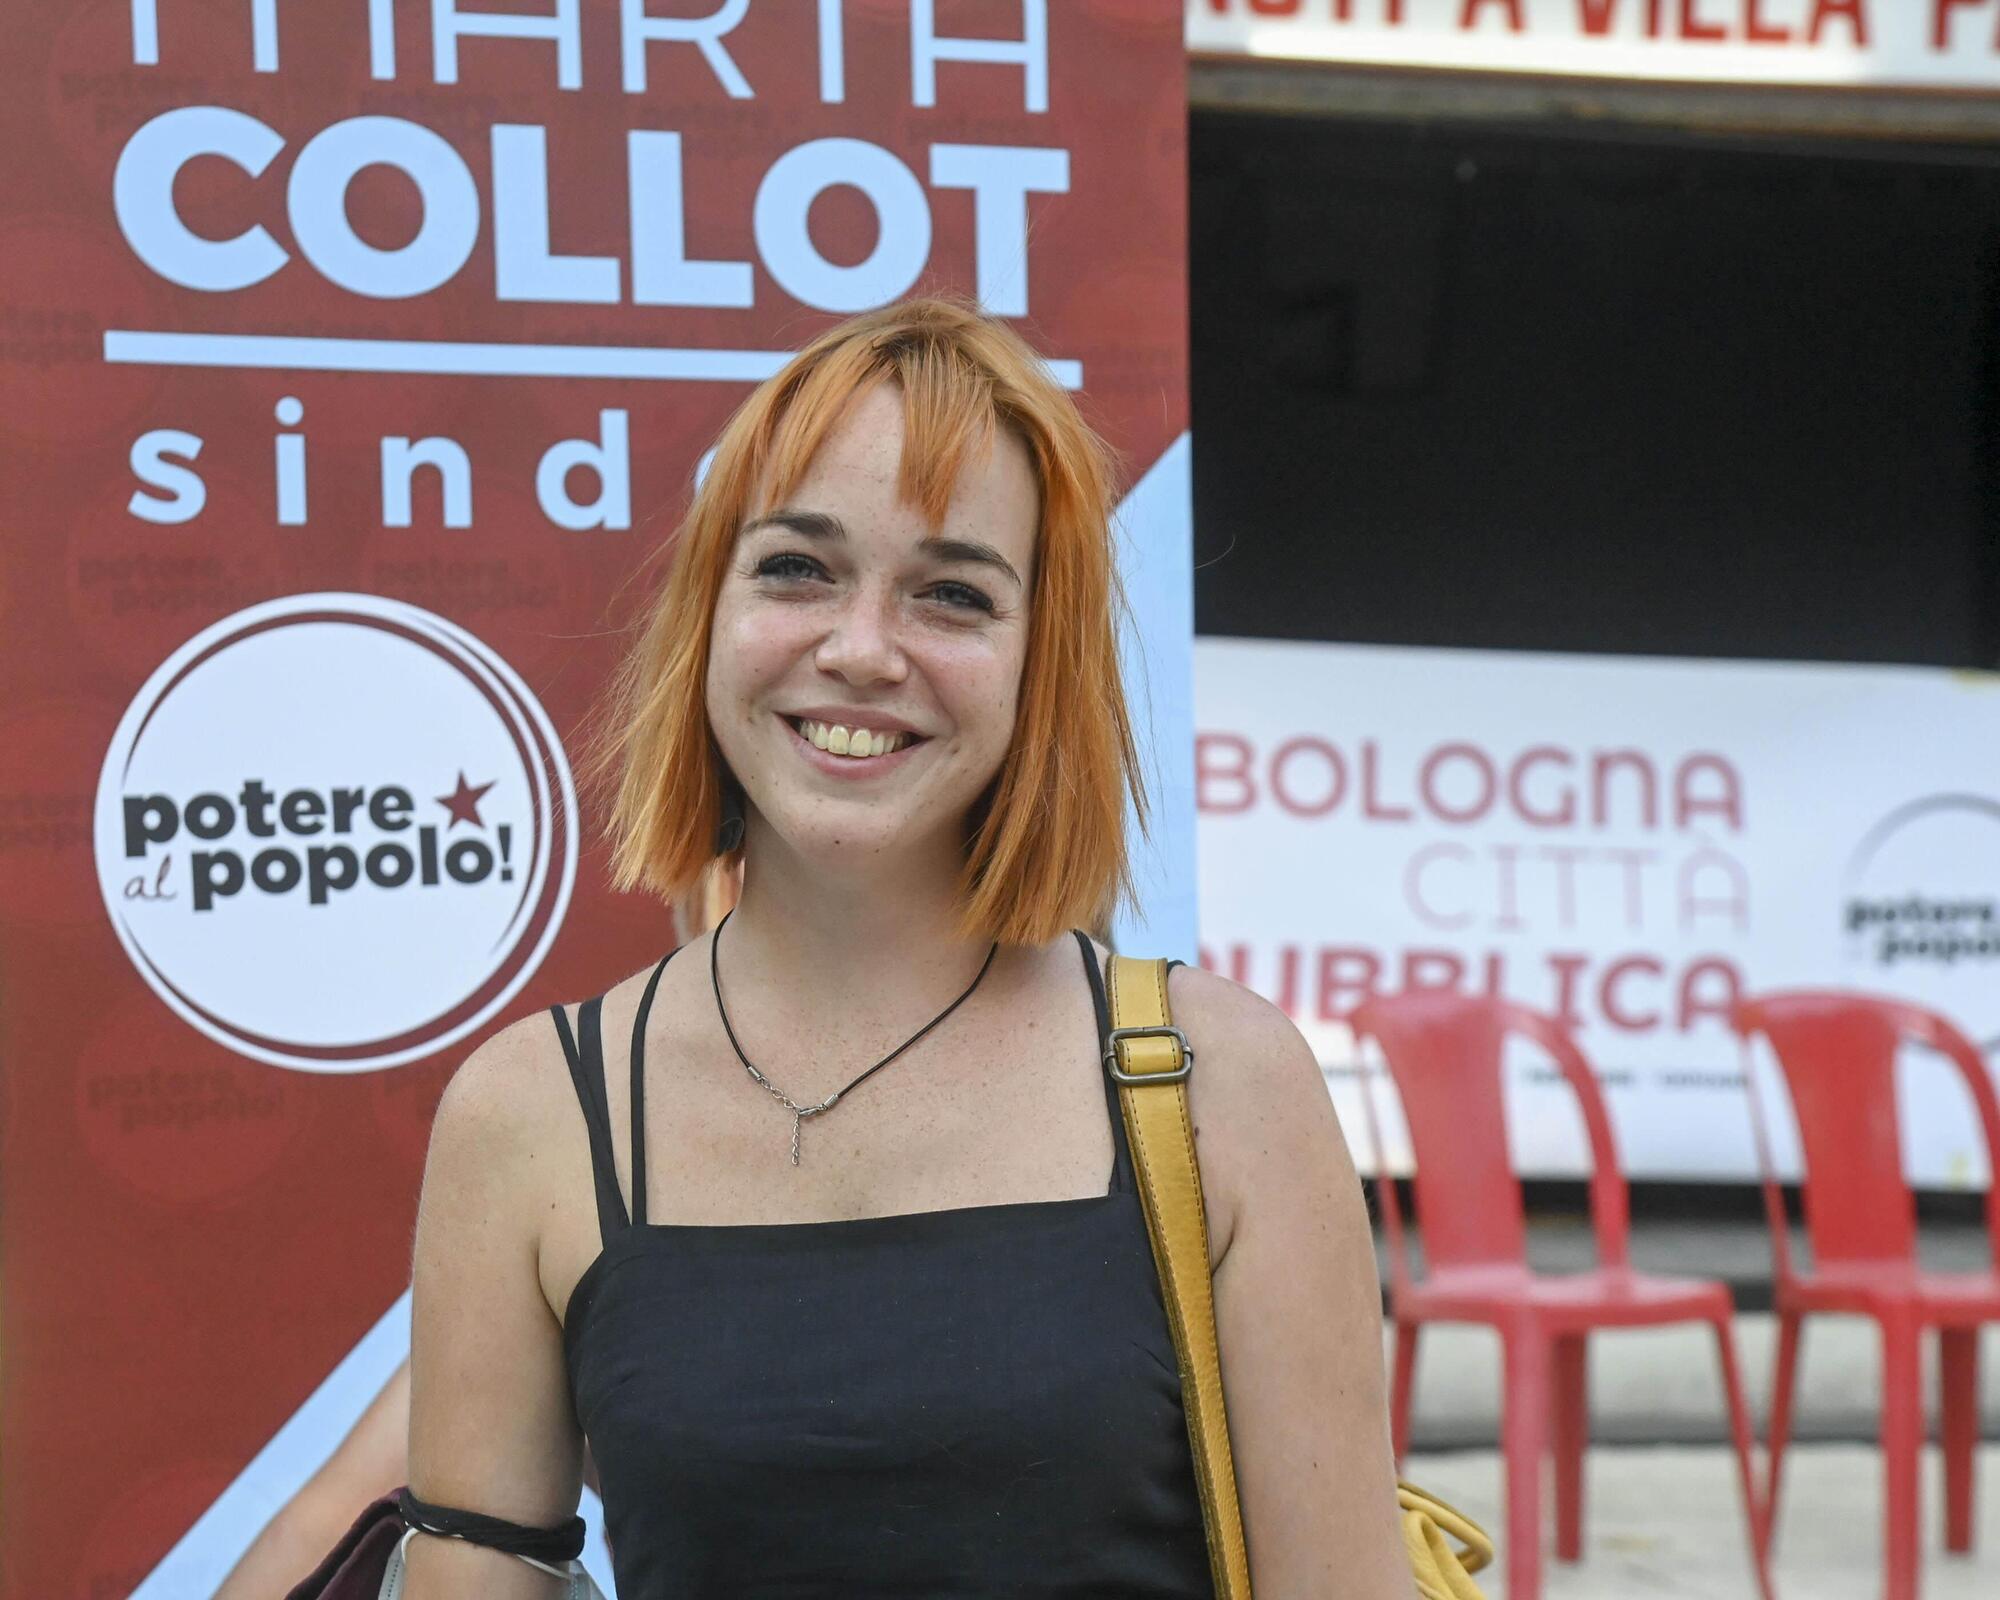 Marta Collot